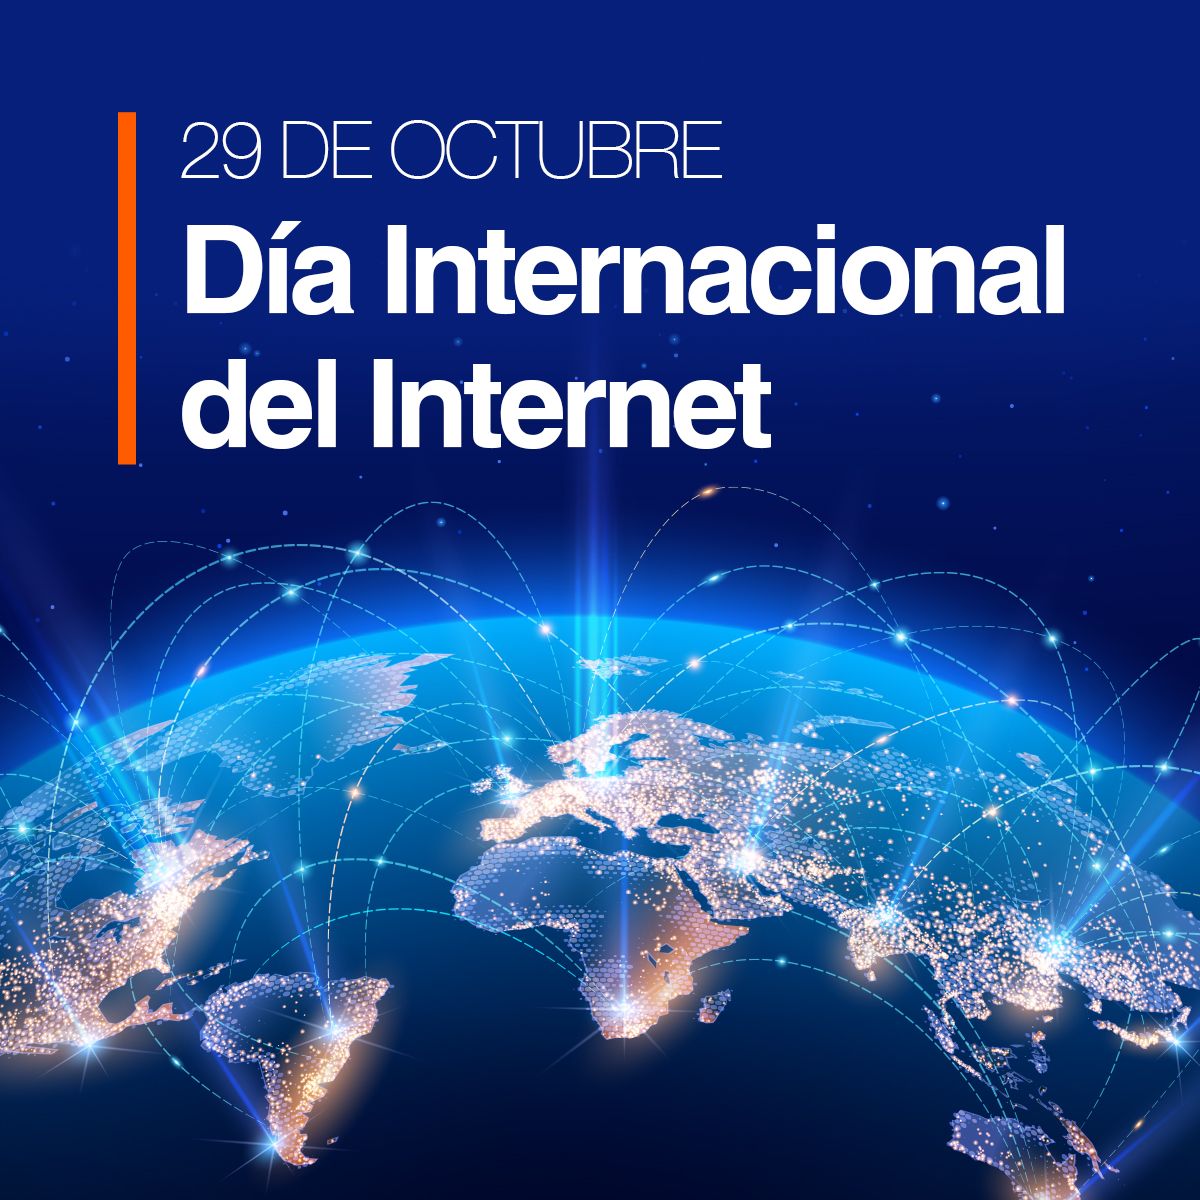 29 de Octubre Día Internacional del Internet